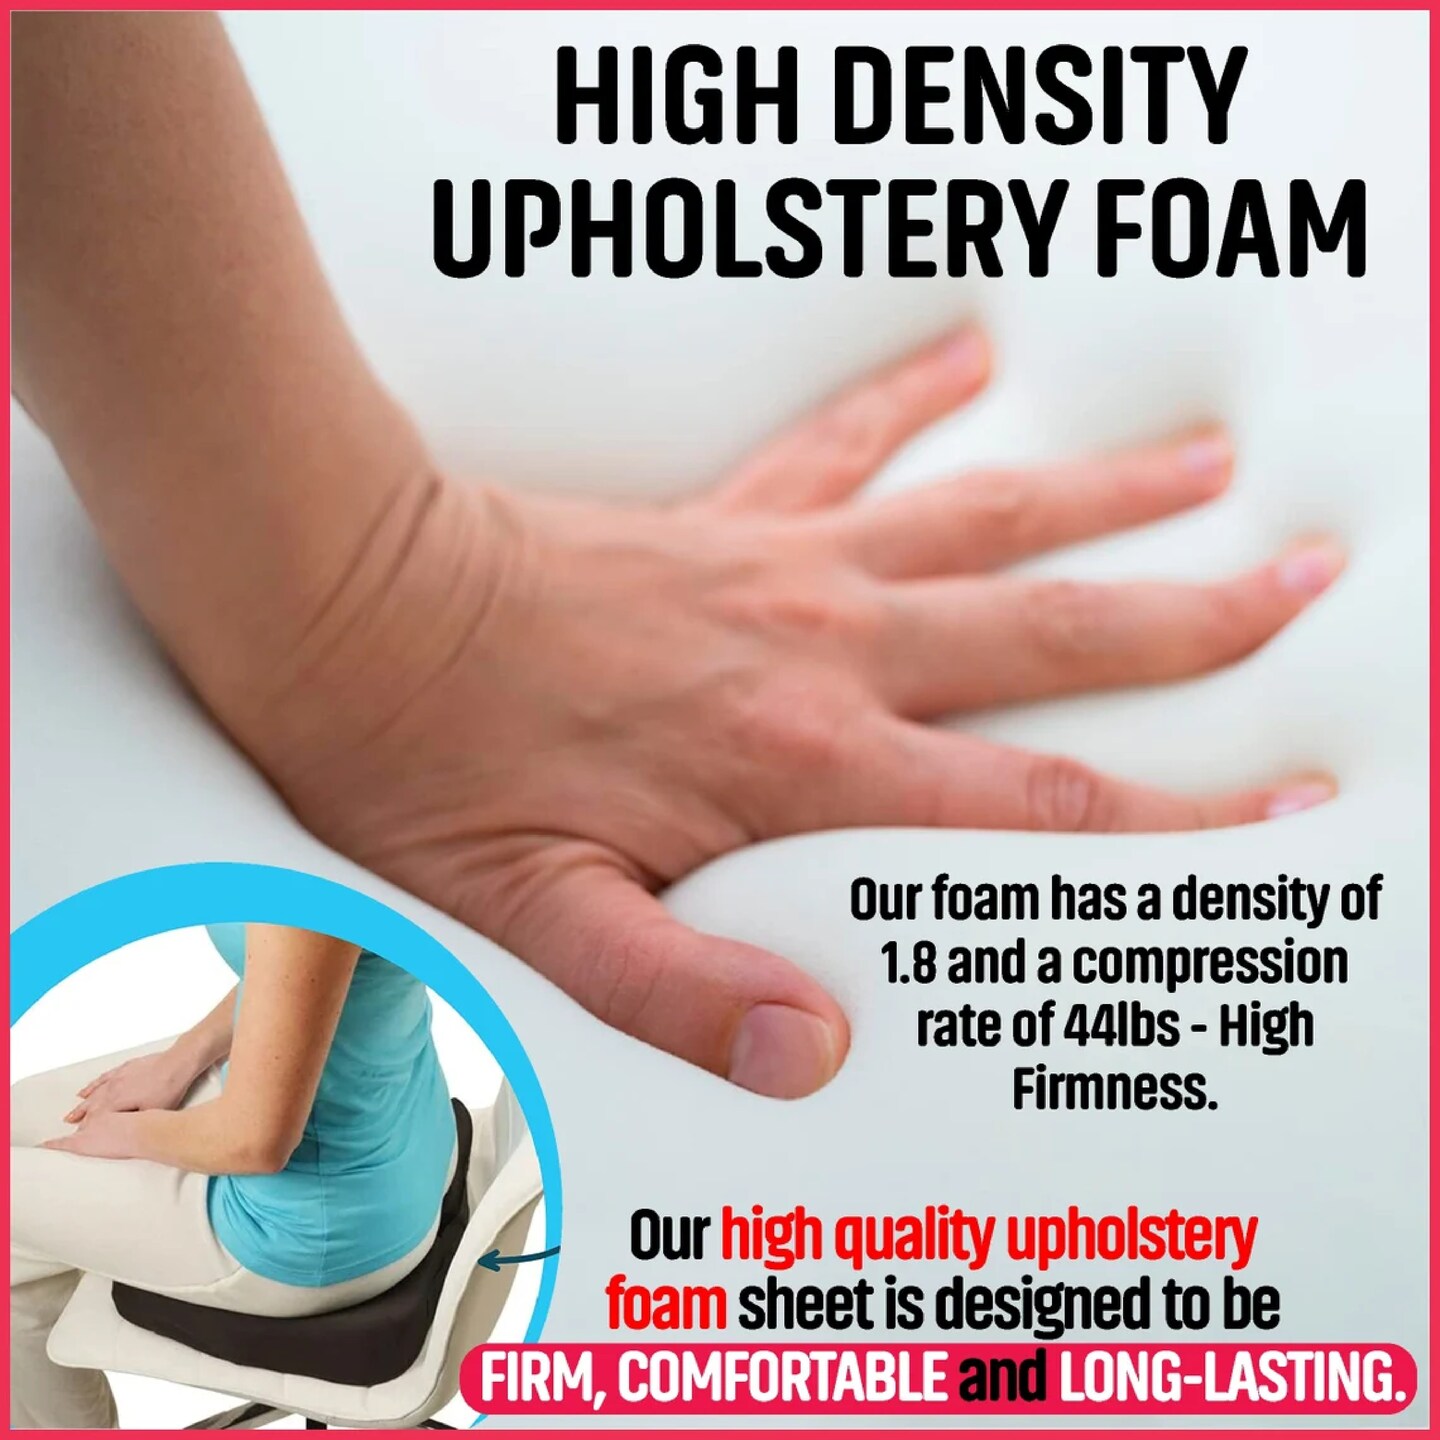 3 thick - High Density Upholstery Foam - Custom Sizes